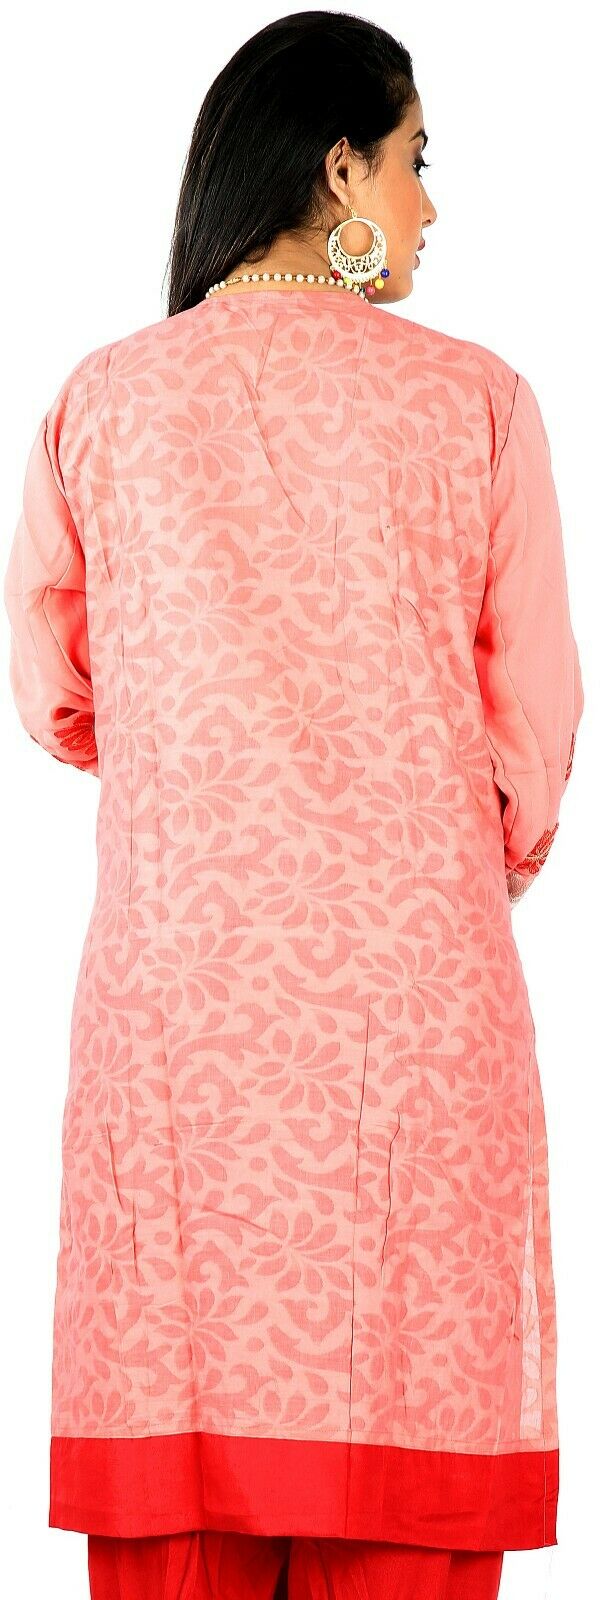 Melon Salwar Kameez for Women | Designer Partywear Dress for Women